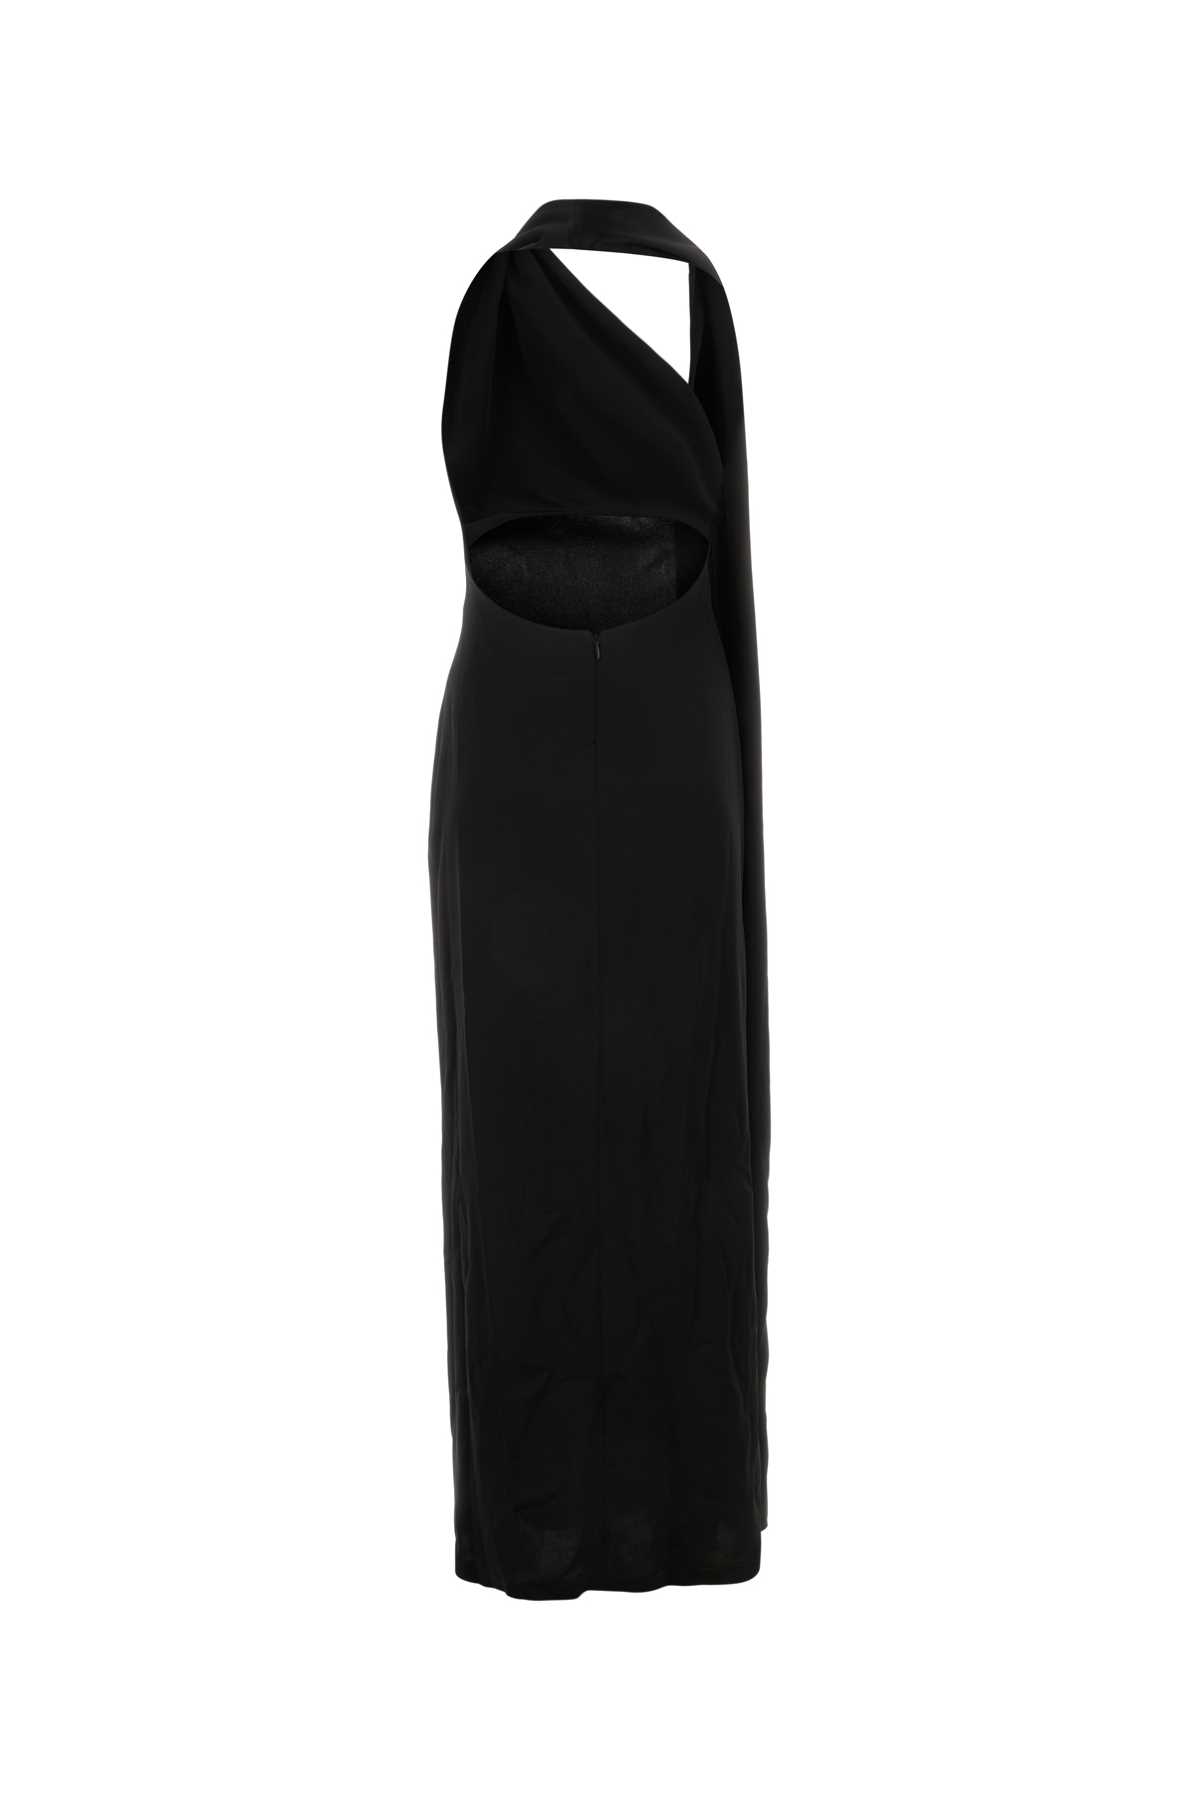 Loewe Black Satin Long Dress